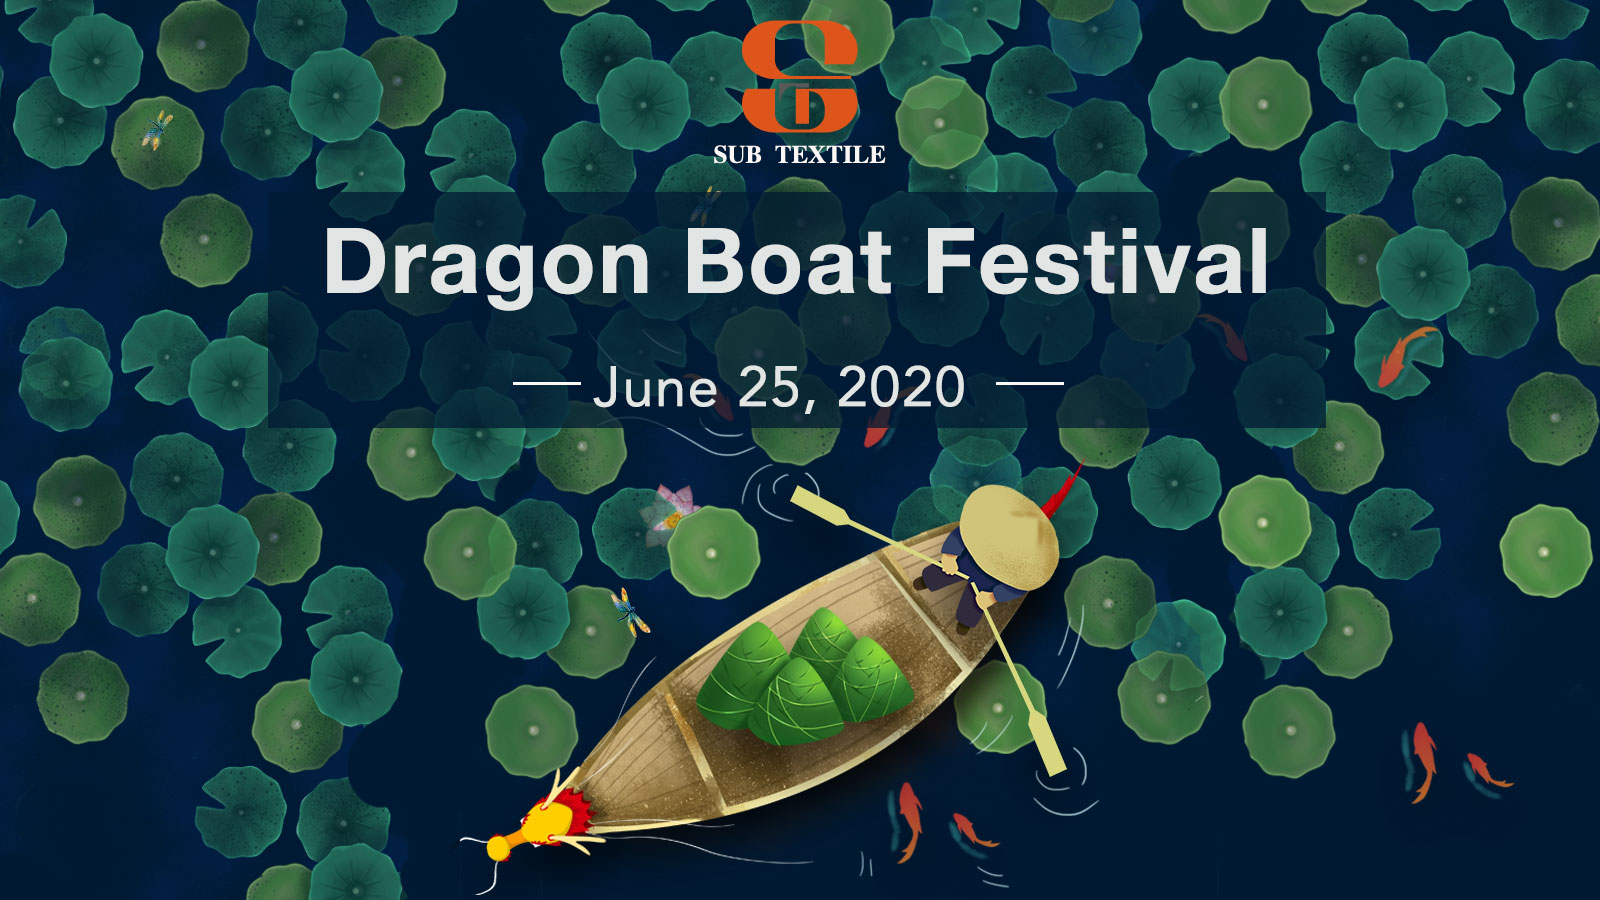 Subtextile Festival Notice: Festival del Bote del Dragón